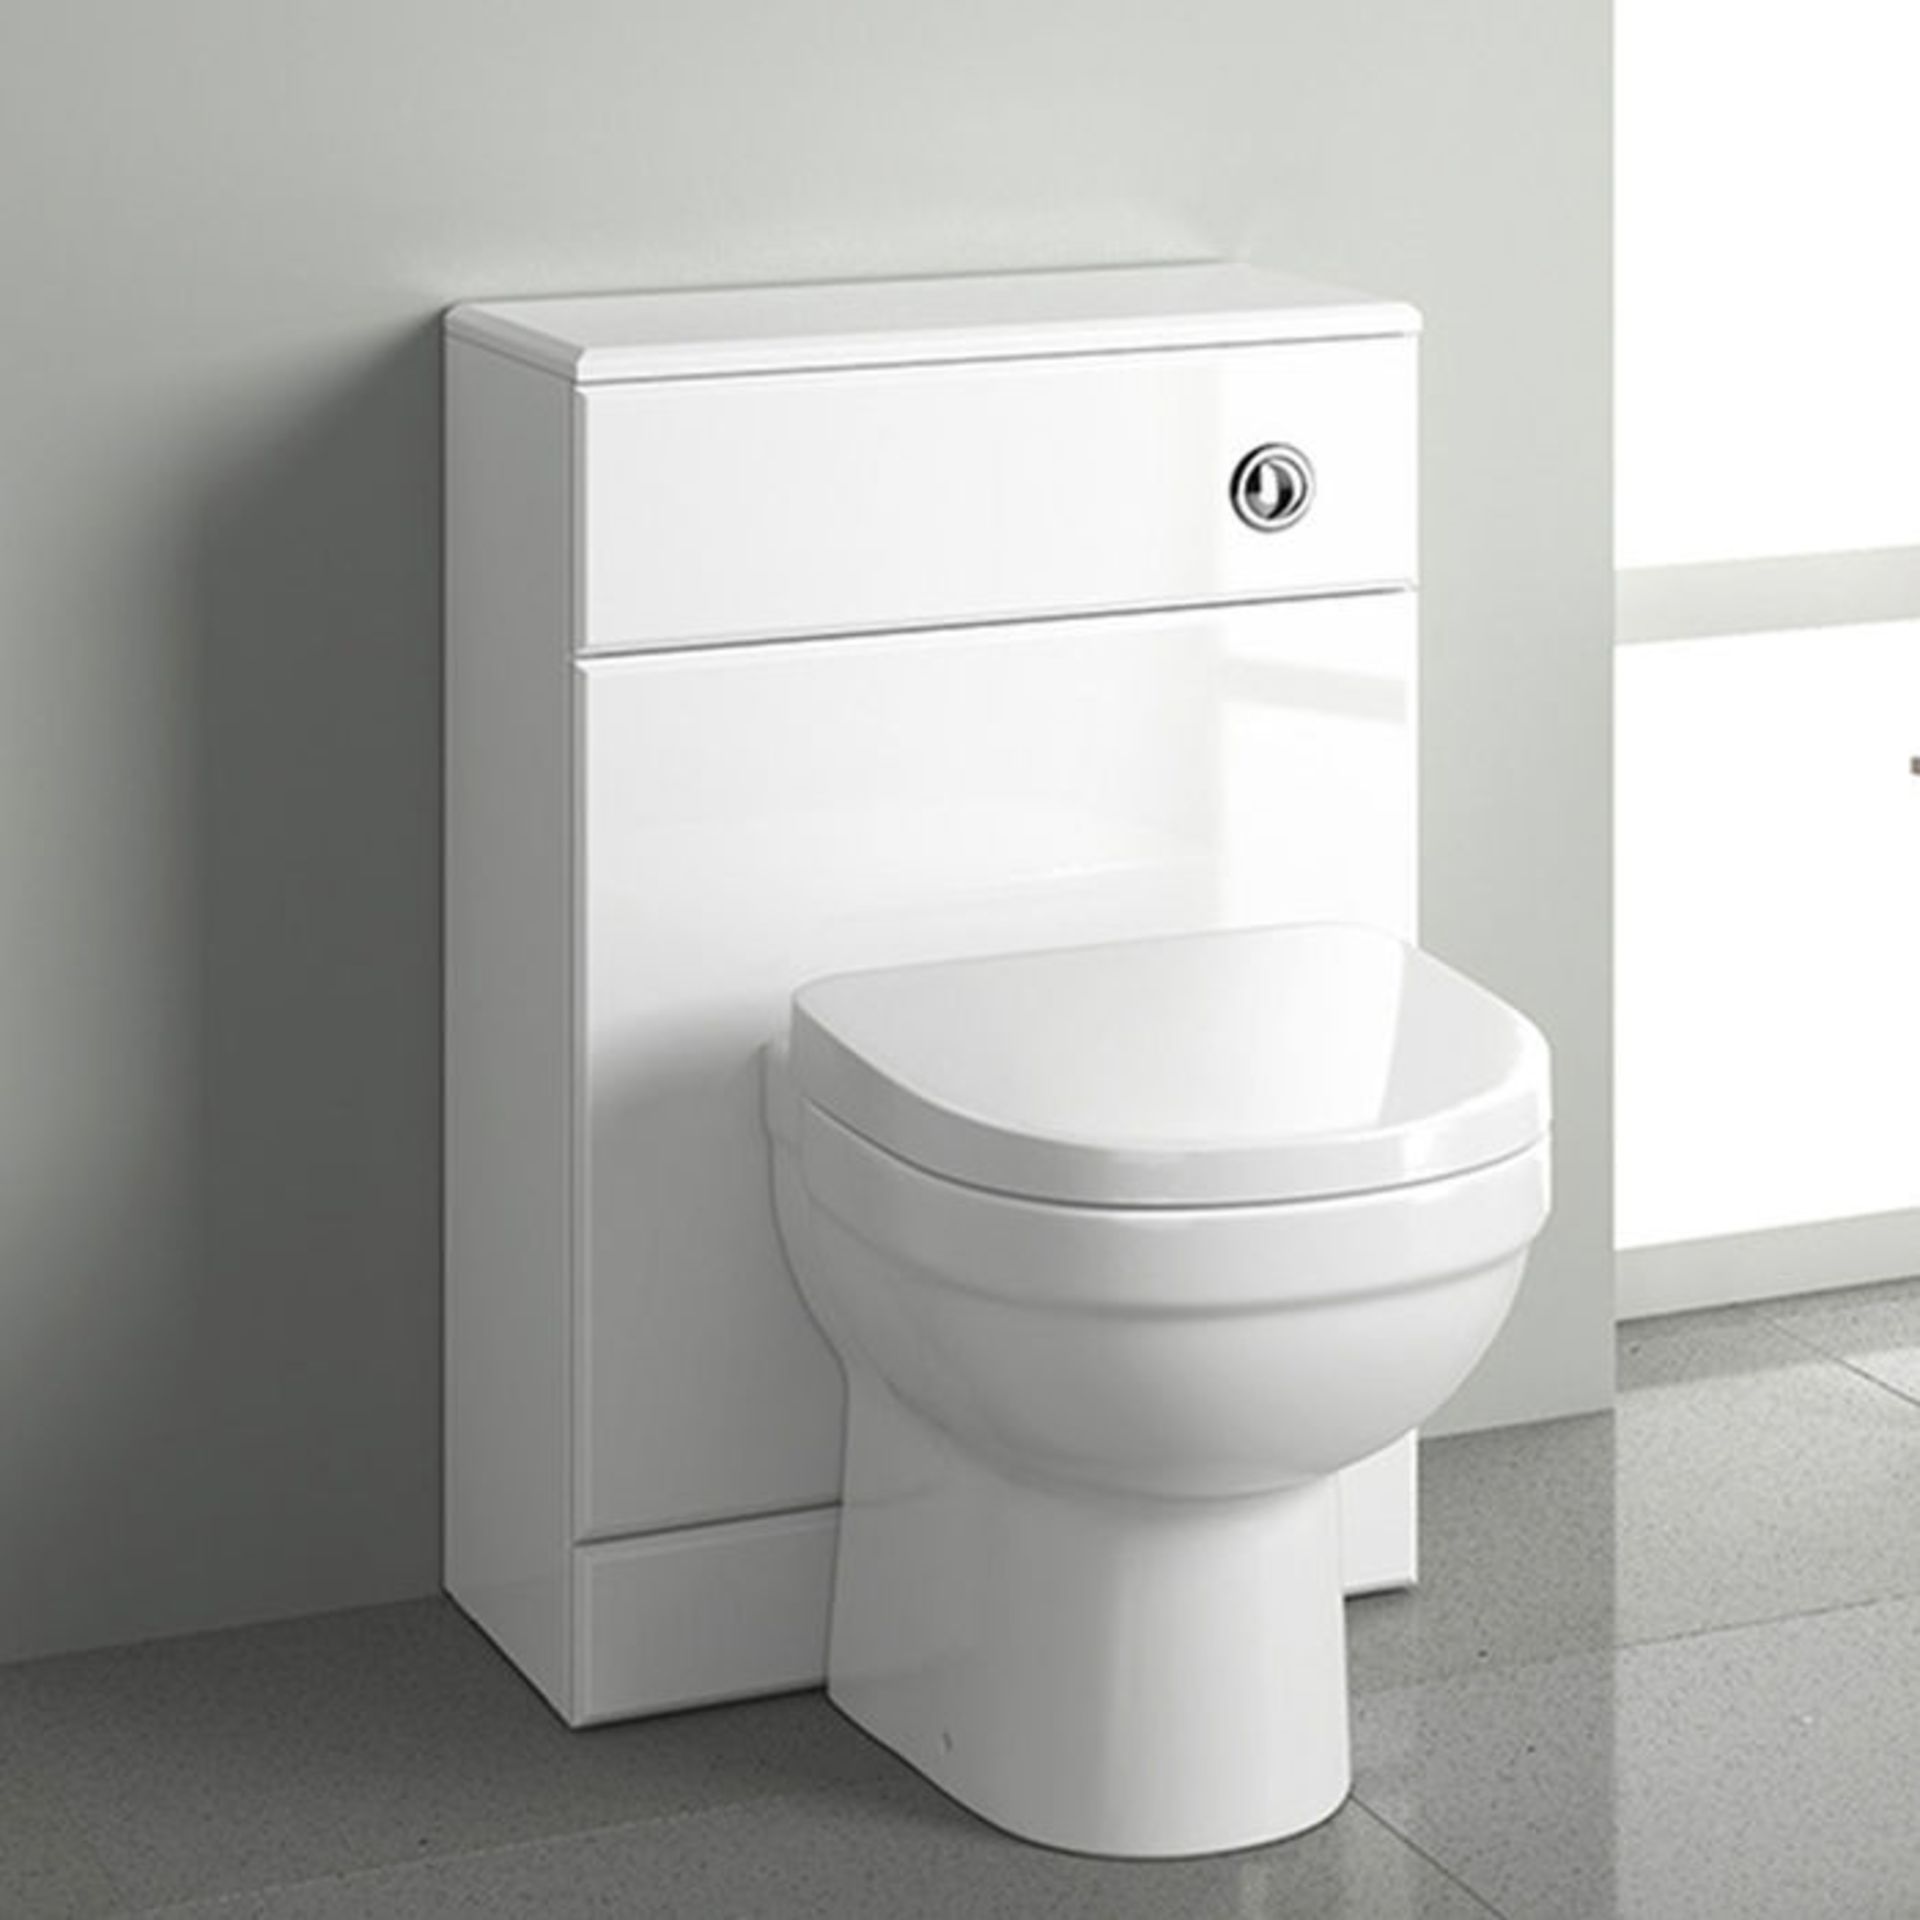 (AL289) 500x300mm Quartz Gloss White Back To Wall Toilet Unit. RRP £143.99. Pristine gloss white